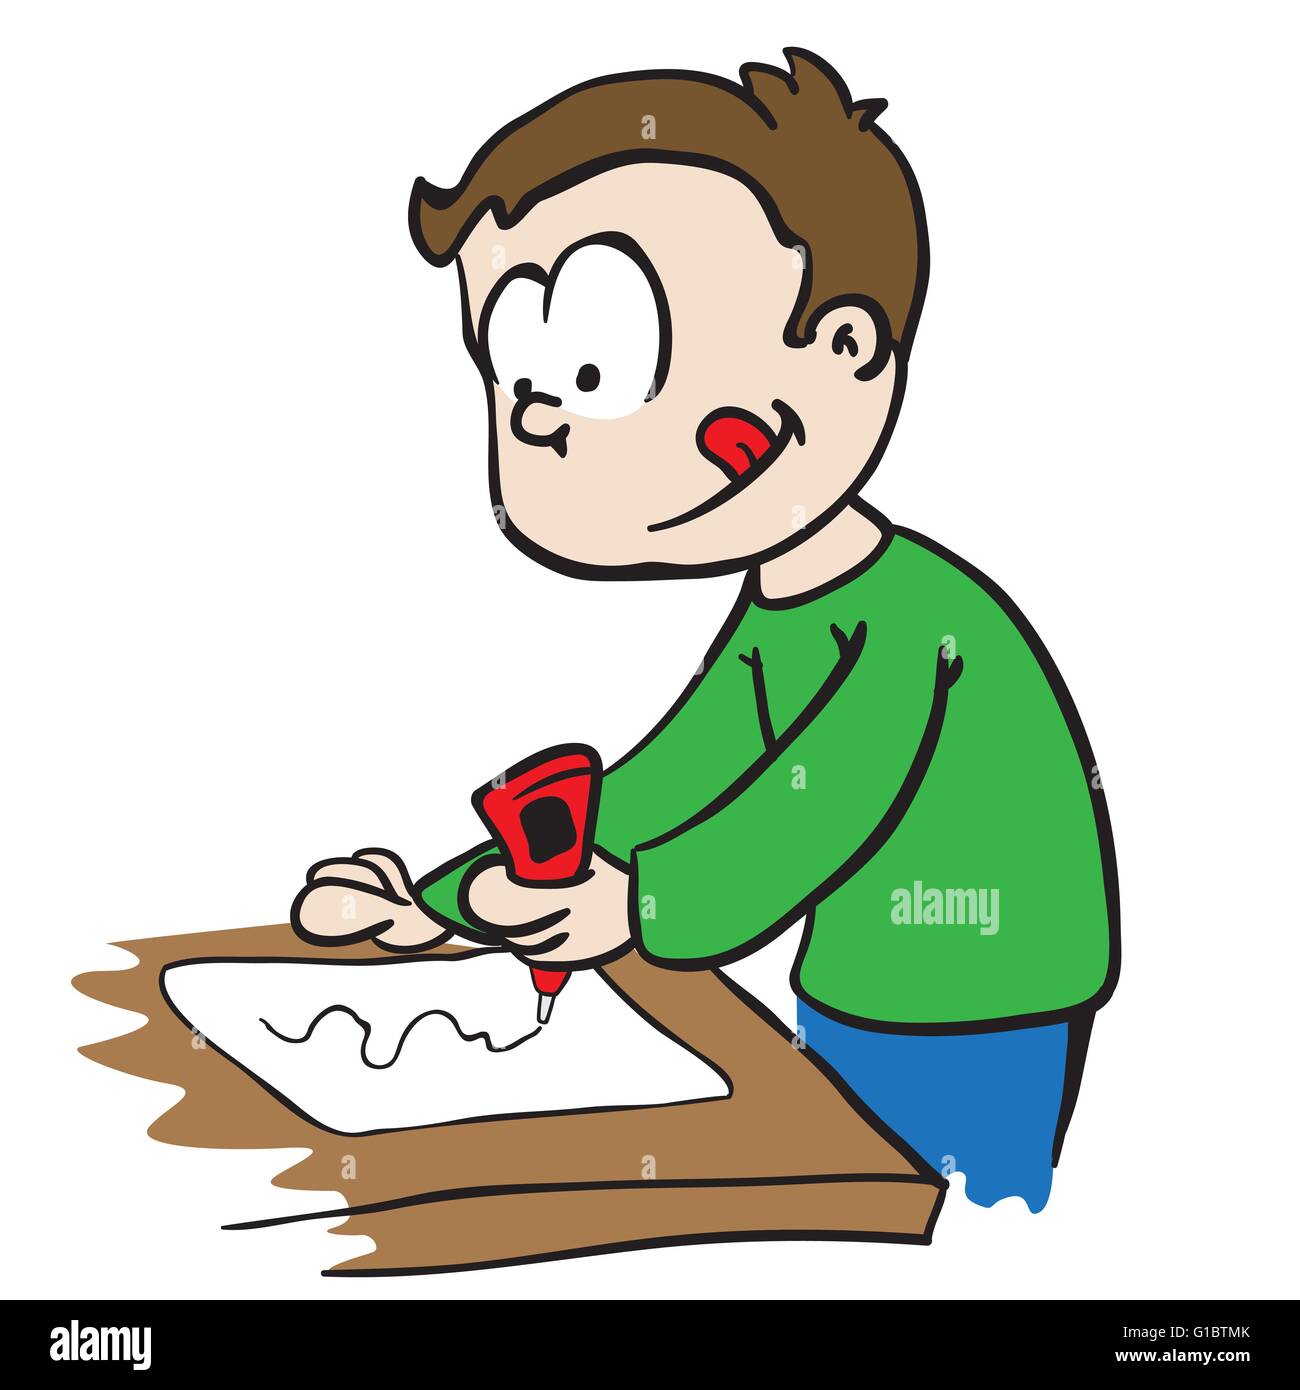 little boy gluing paper cartoon Stock Vector Image & Art - Alamy